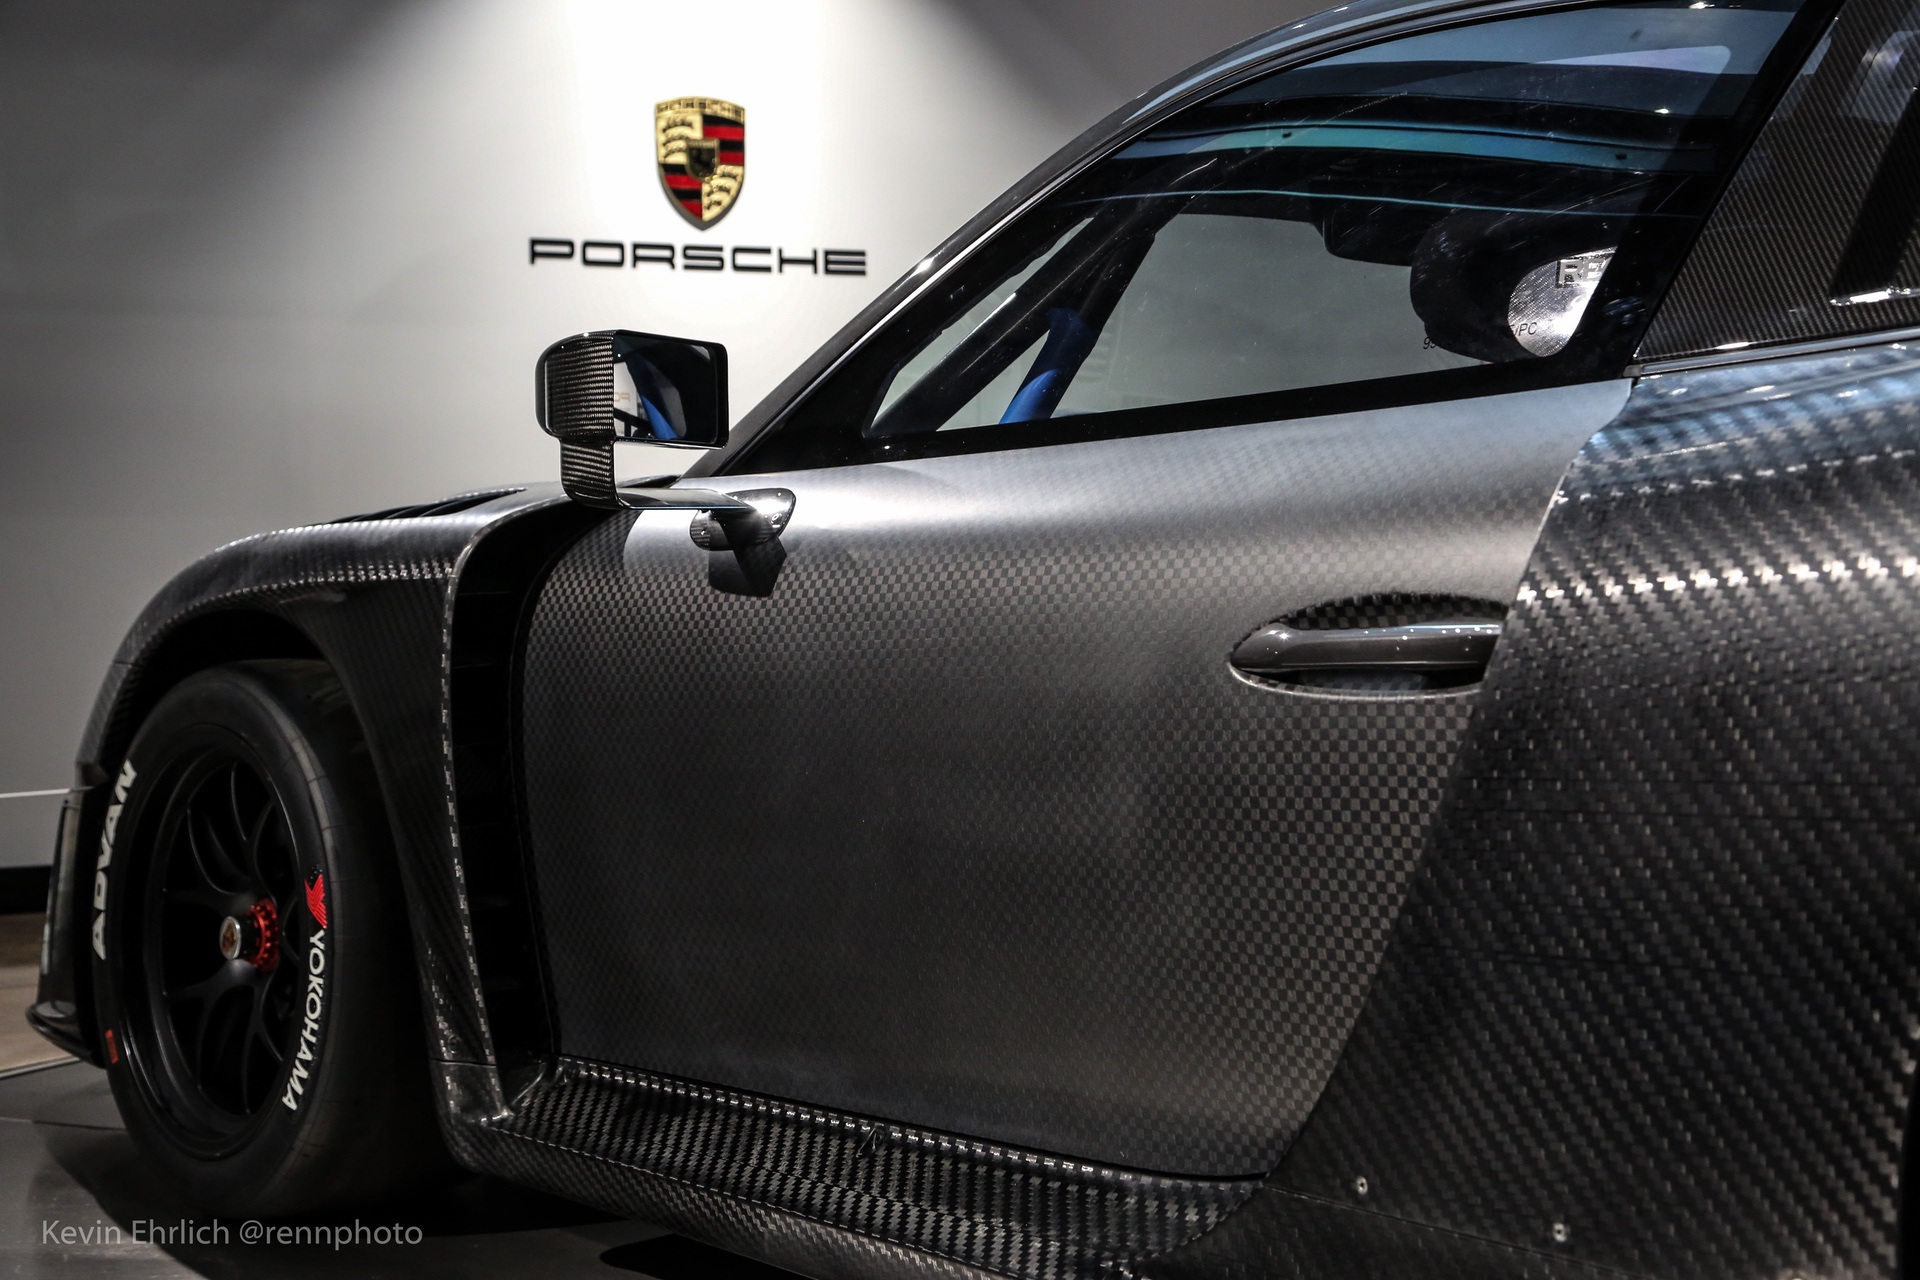 Contrast between doors and body panels on black carbon fiber Porsche 935/19